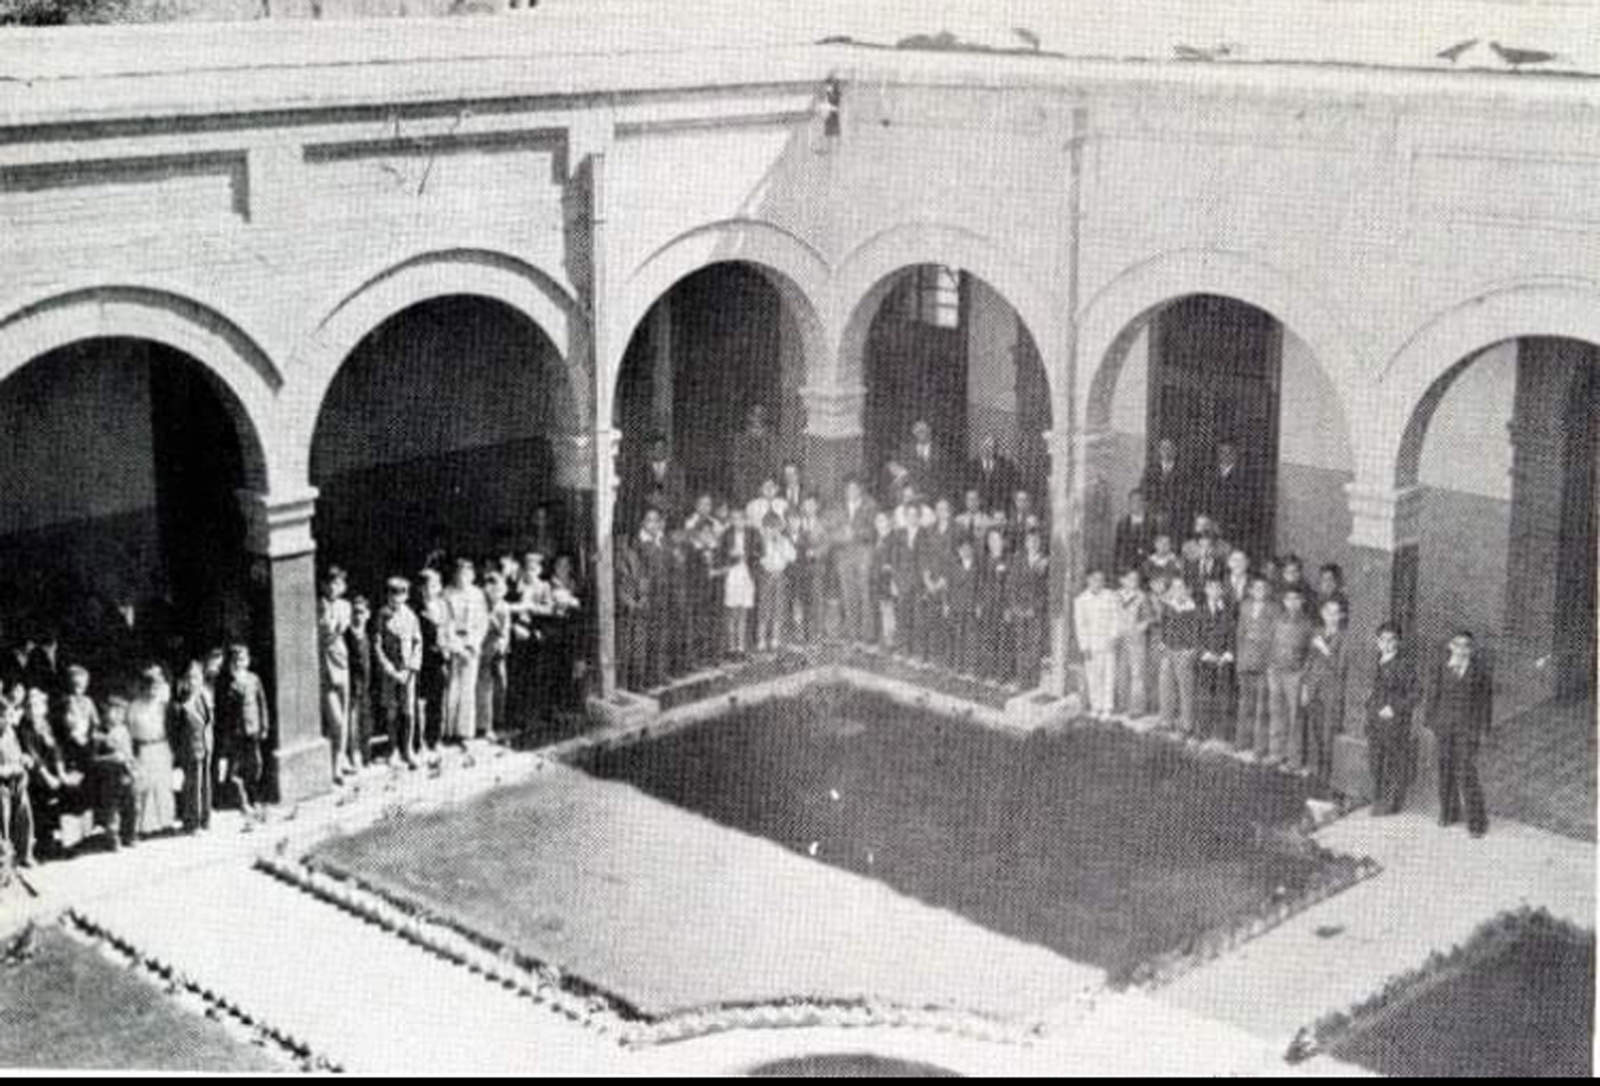 Patio central de la finca de los Hermanos Lasallistas, con alumnos reunidos (antigua casa de Don Luis Paparelli).